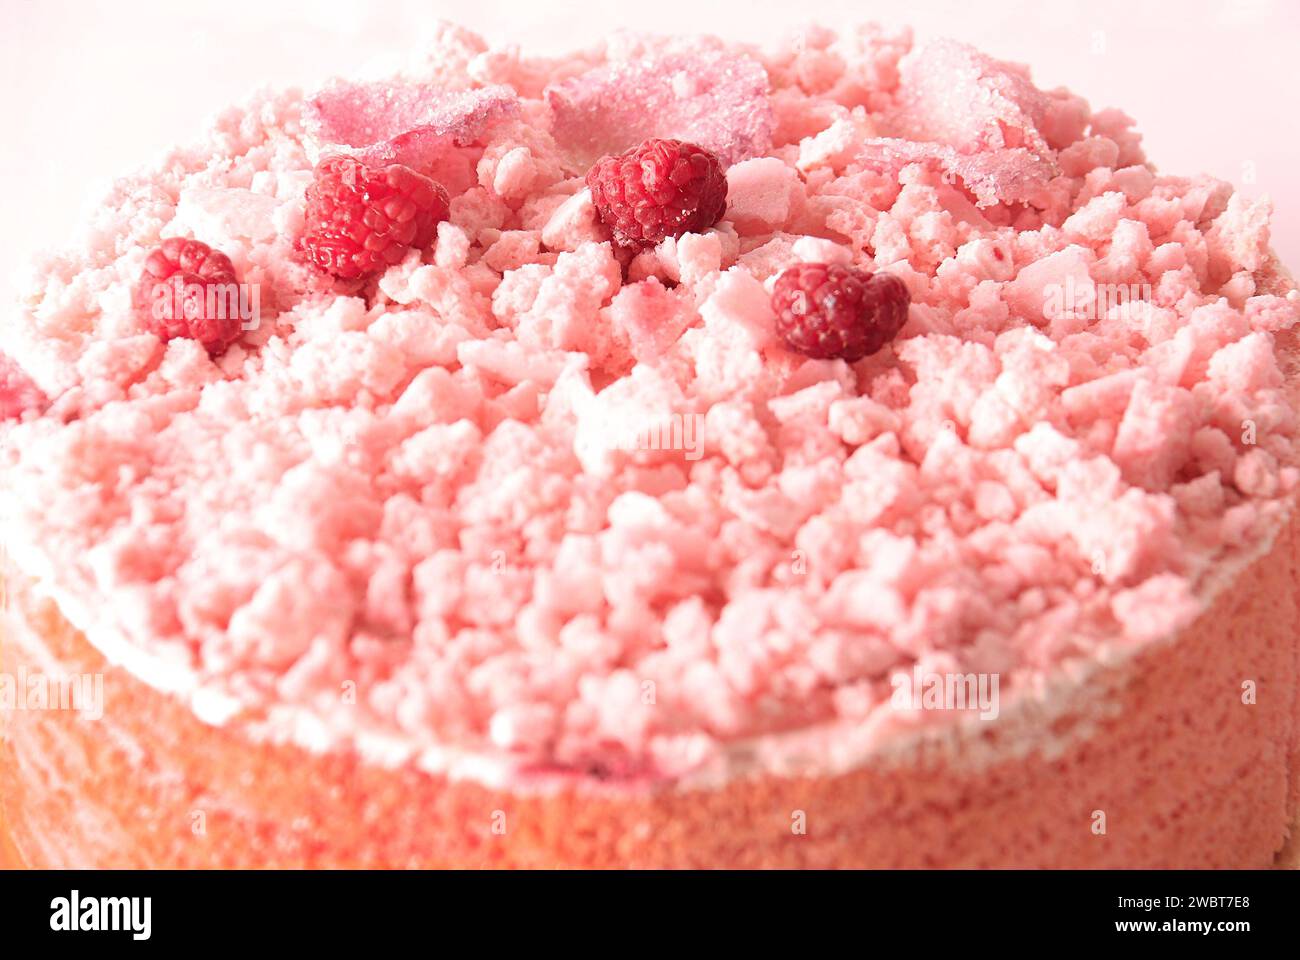 Un gâteau rose recouvert de meringue charlottes, framboises et pétales de rose sucrés. Banque D'Images